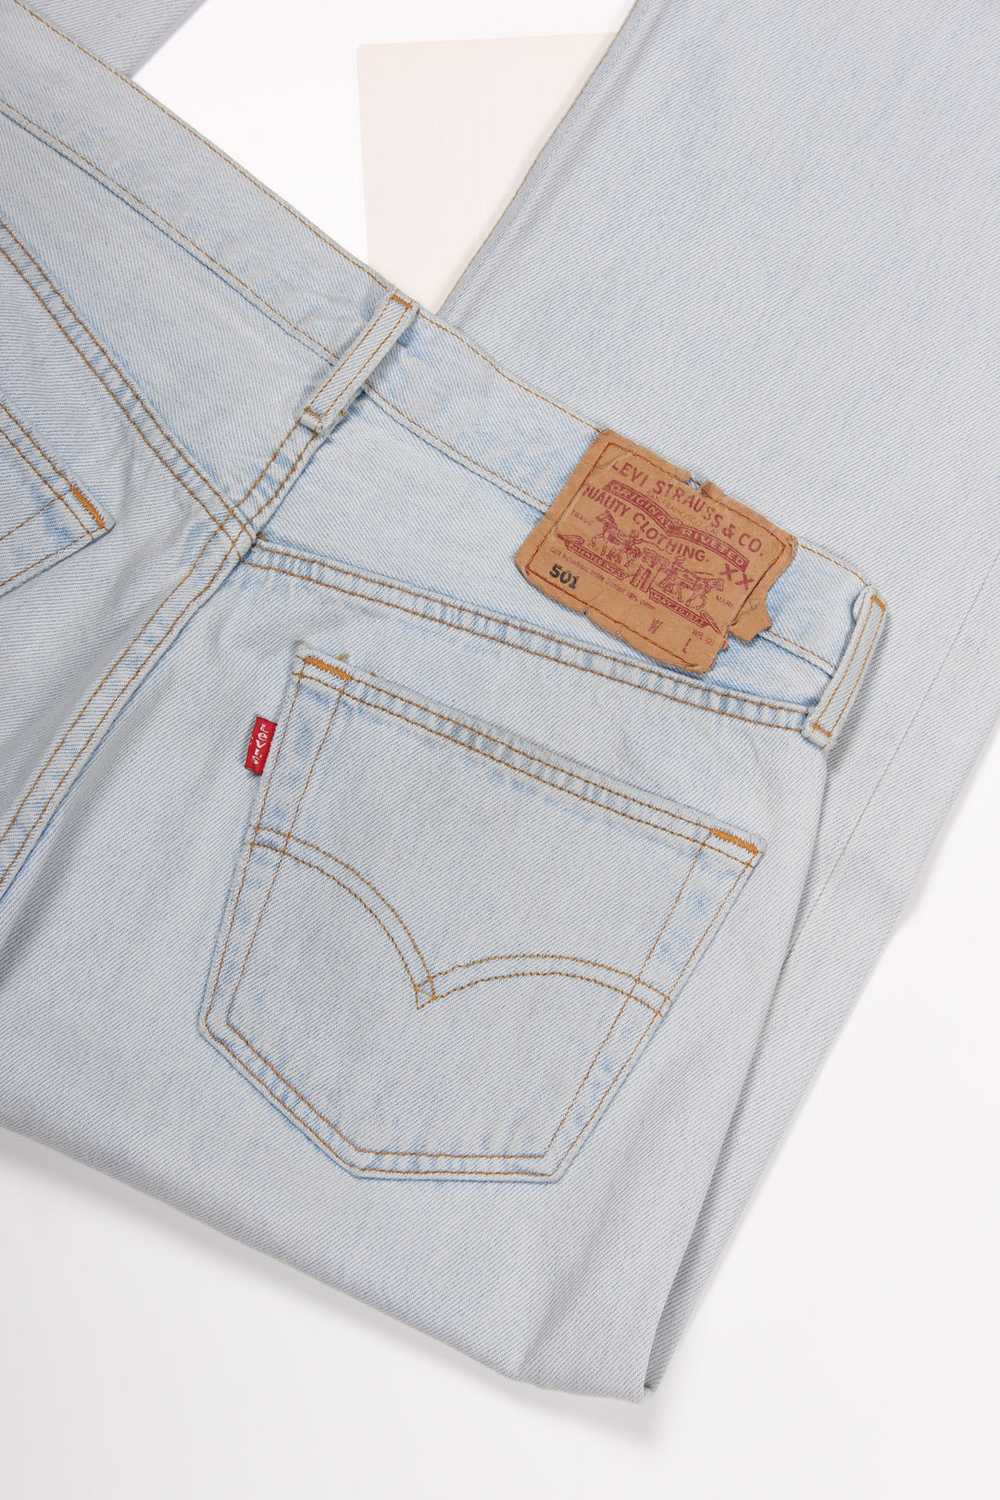 Men's Vintage Levi's 501 Denim Jeans W32 x L30 - image 4